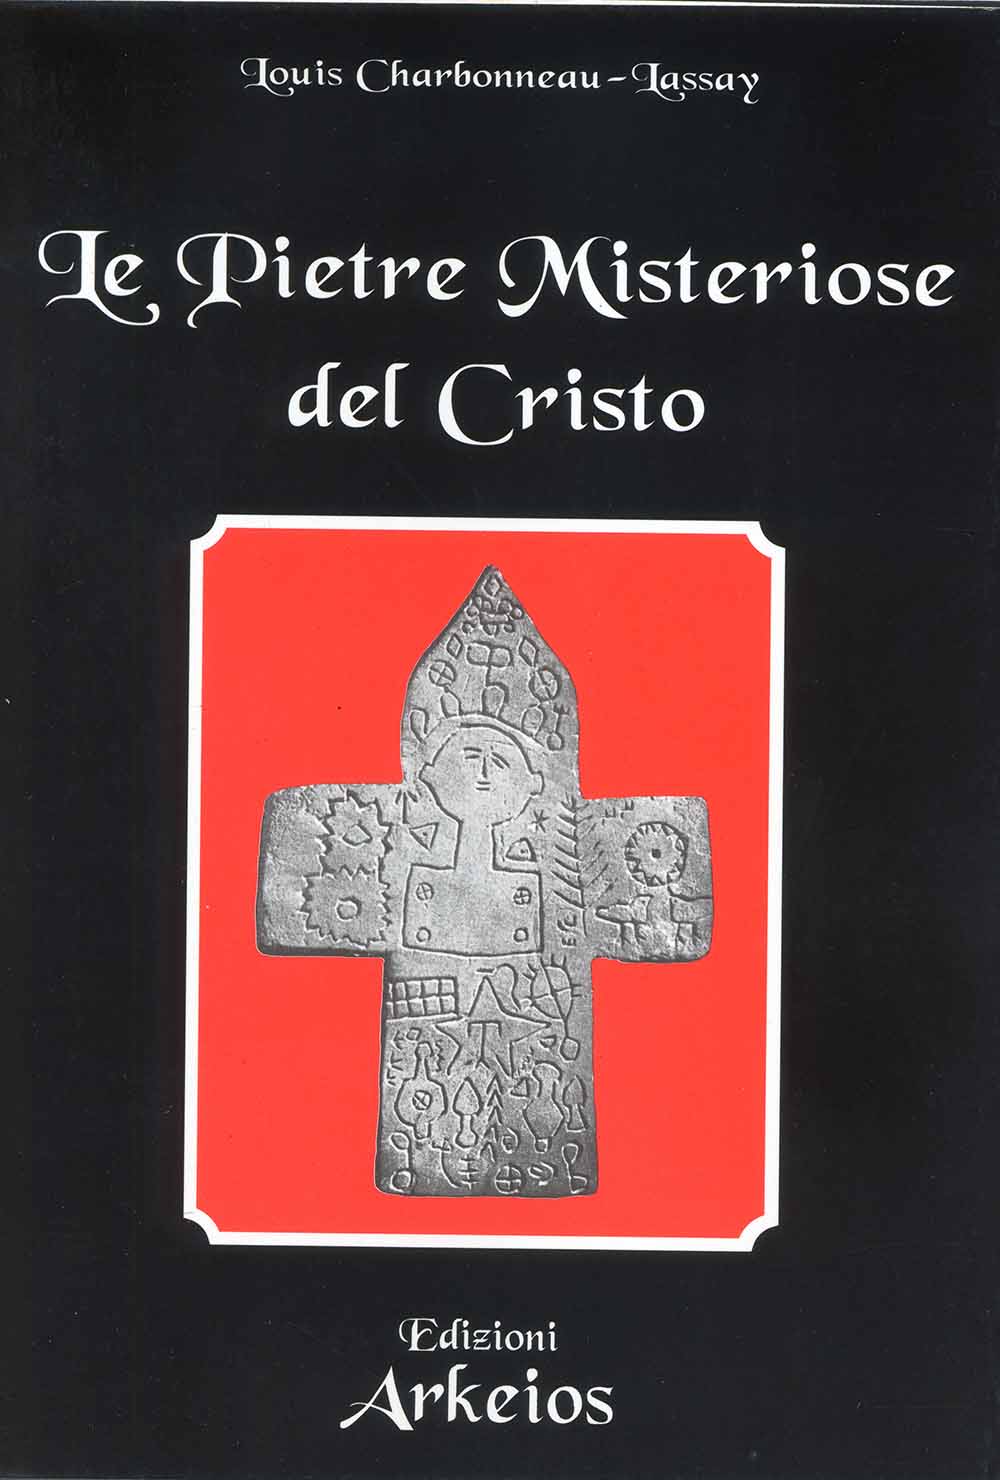 Libri Charbonneau Lassay Louis - Le Pietre Misteriose Del Cristo NUOVO SIGILLATO, EDIZIONE DEL 01/07/2000 SUBITO DISPONIBILE